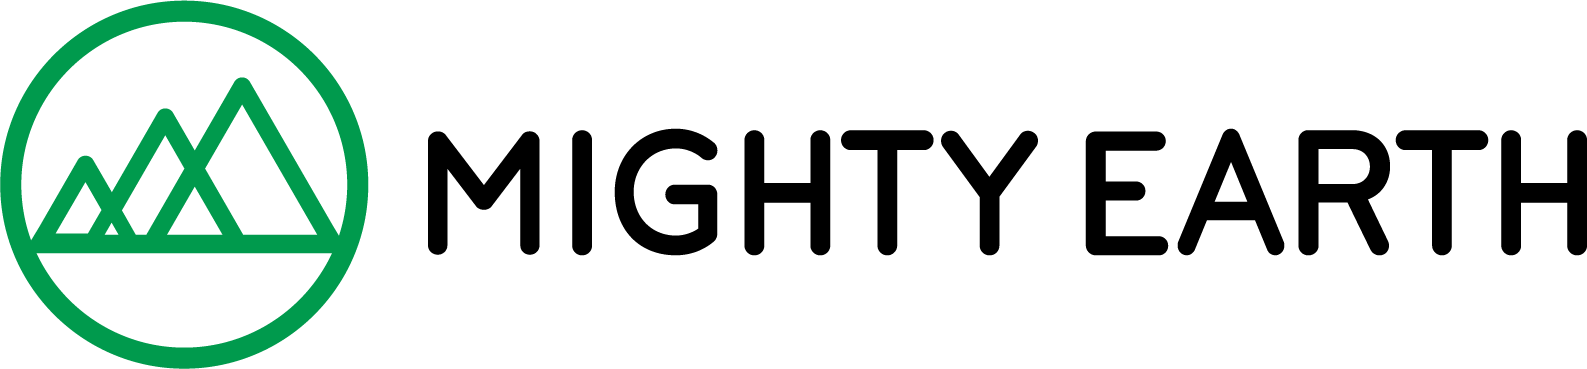 Mighty Earth logo